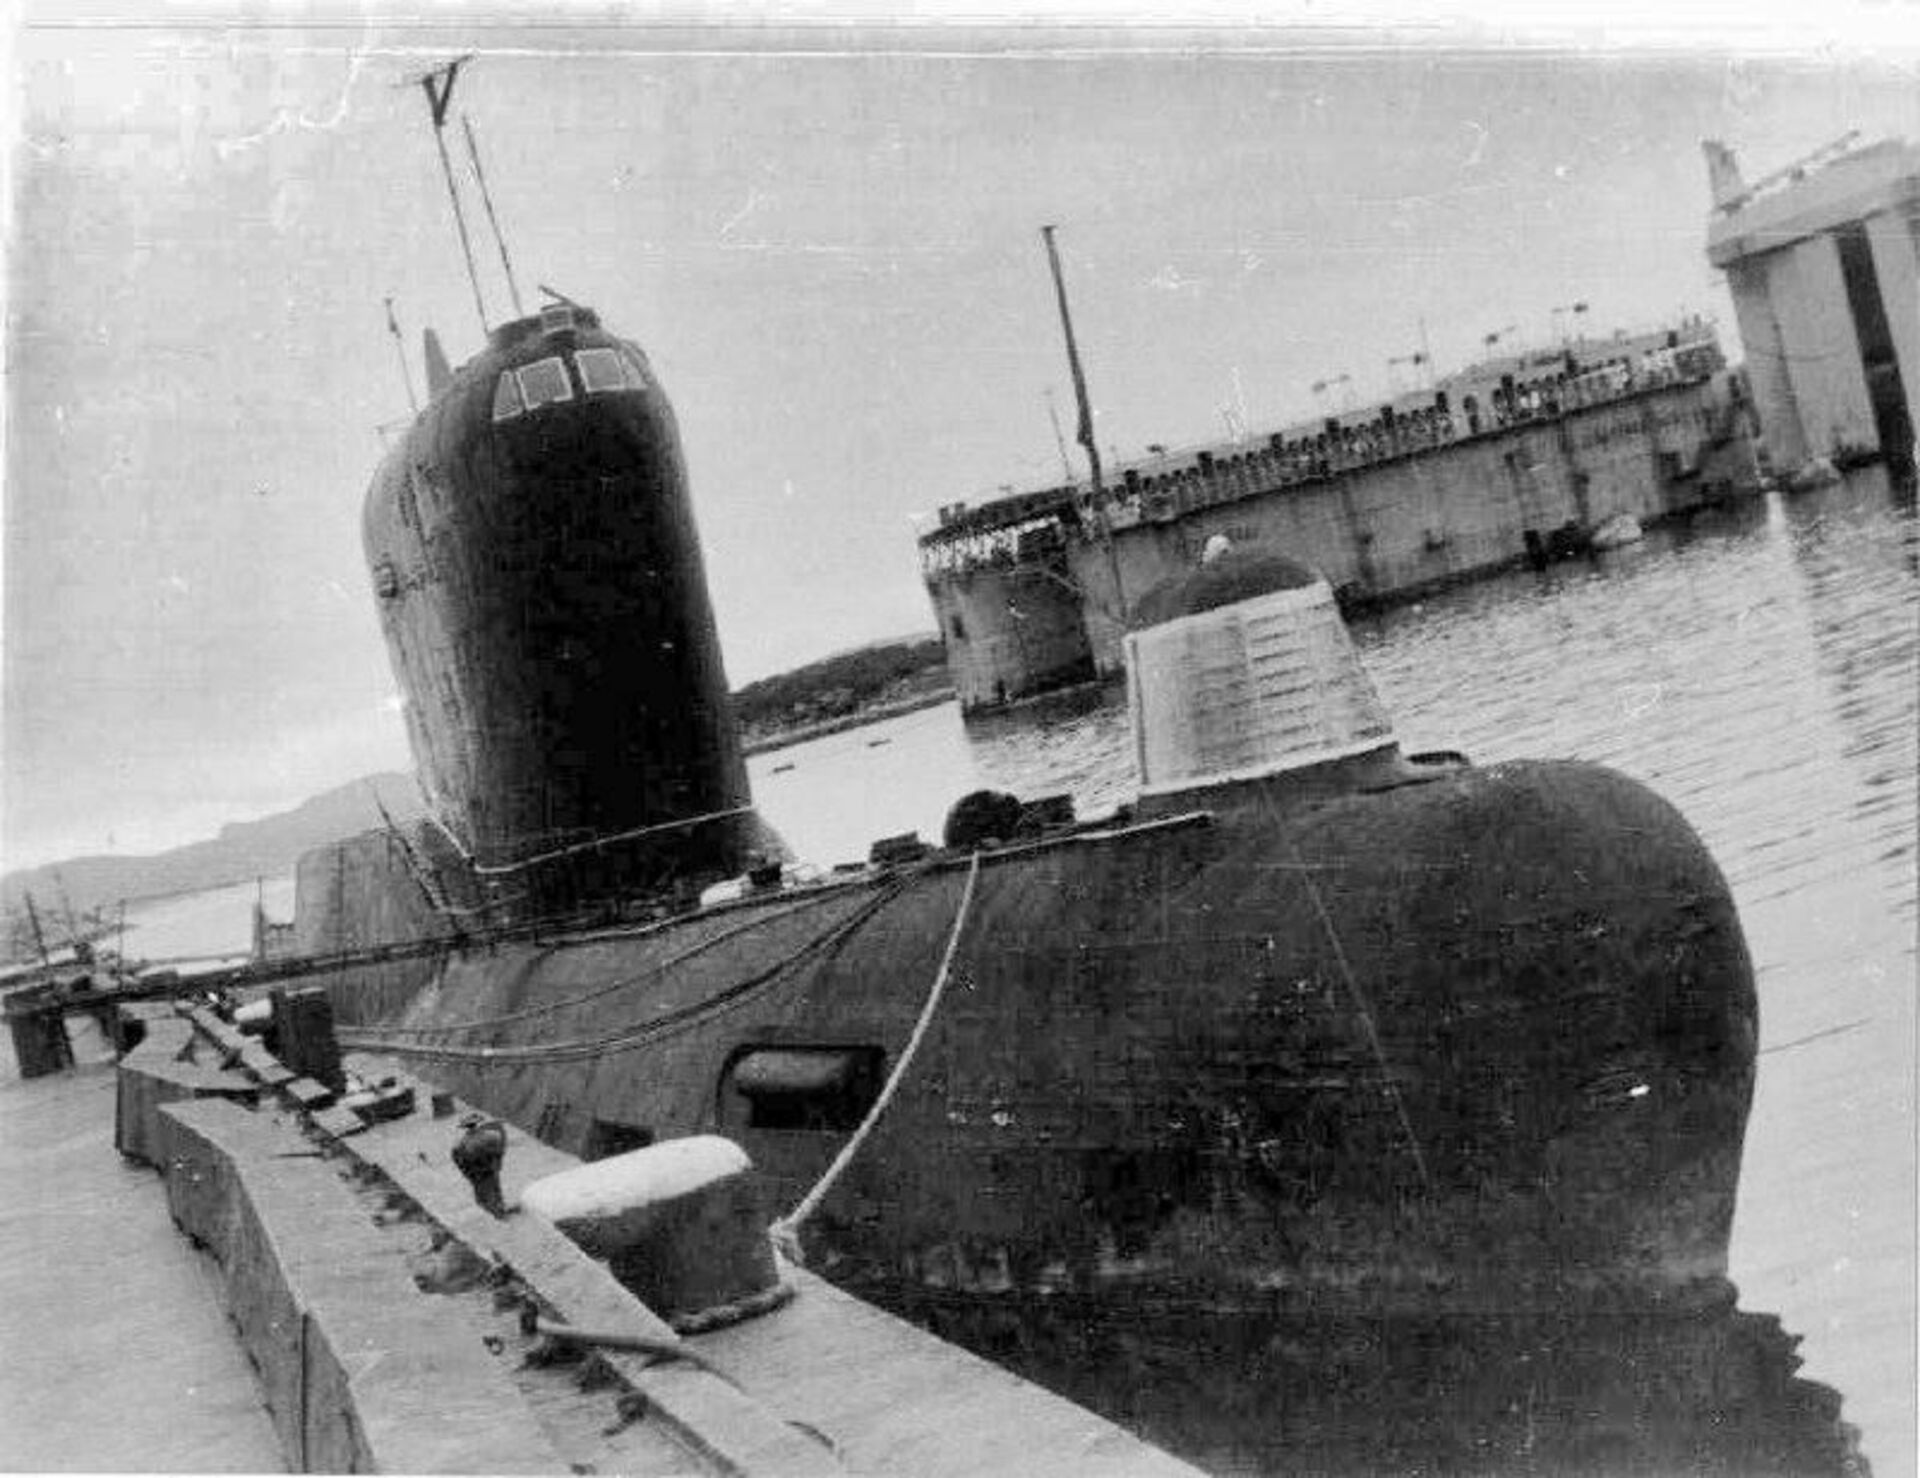 История пл. K19 подводная лодка. К-19 — атомная подводная лодка проекта 658. Атомная подводная лодка к-19 Хиросима. К-19 подводная лодка.